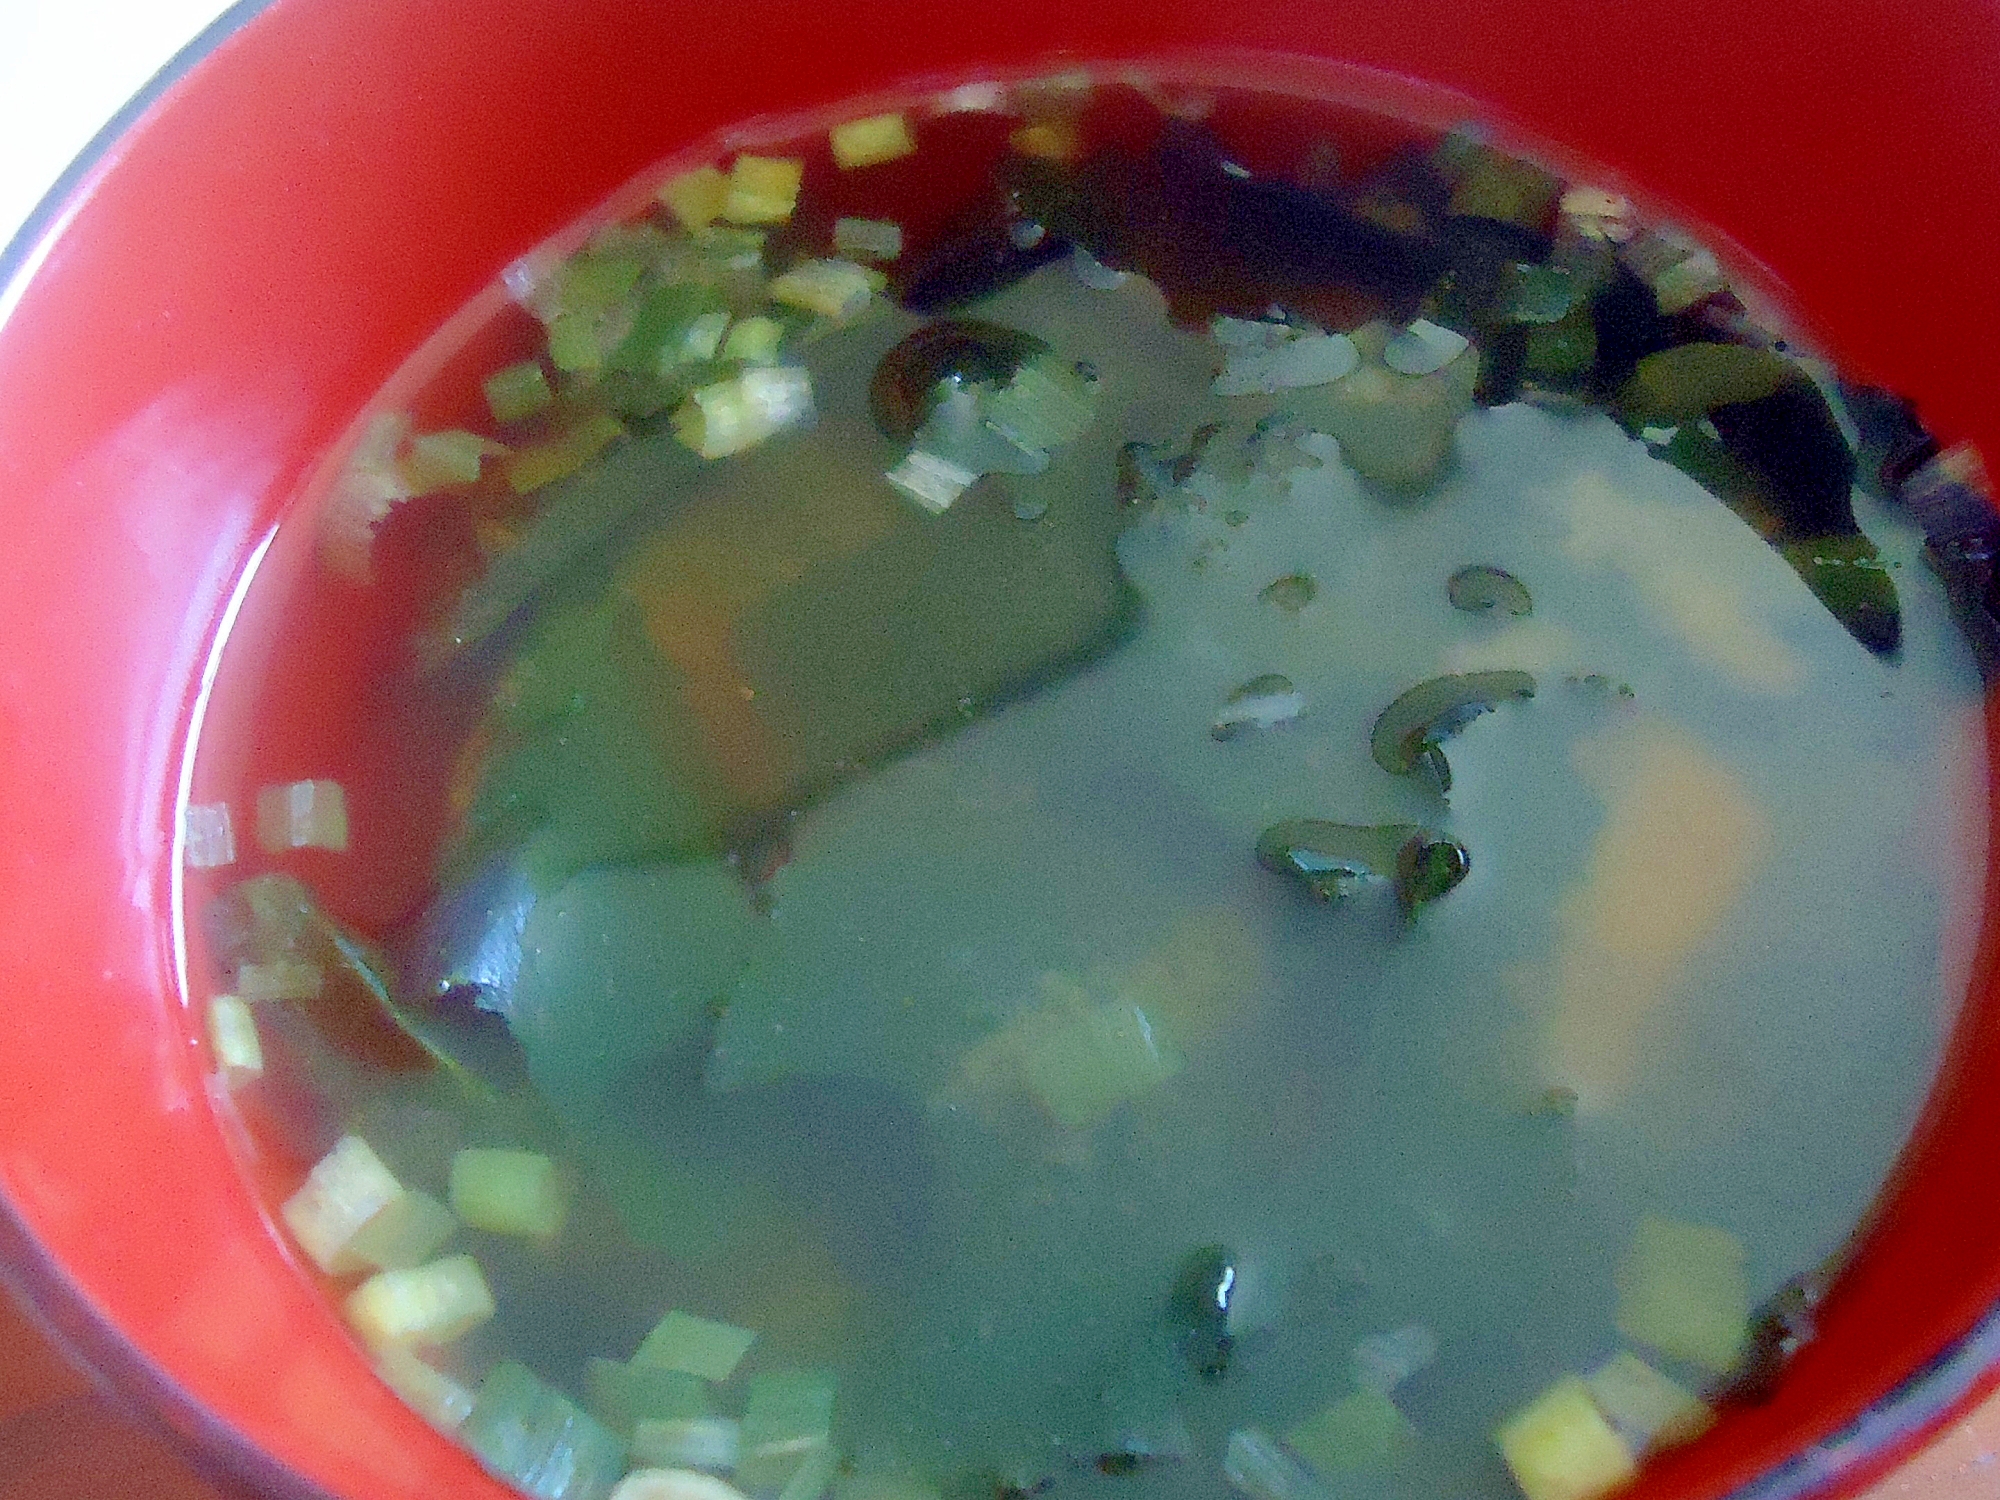 冷凍オクラとメカブのワカメスープ